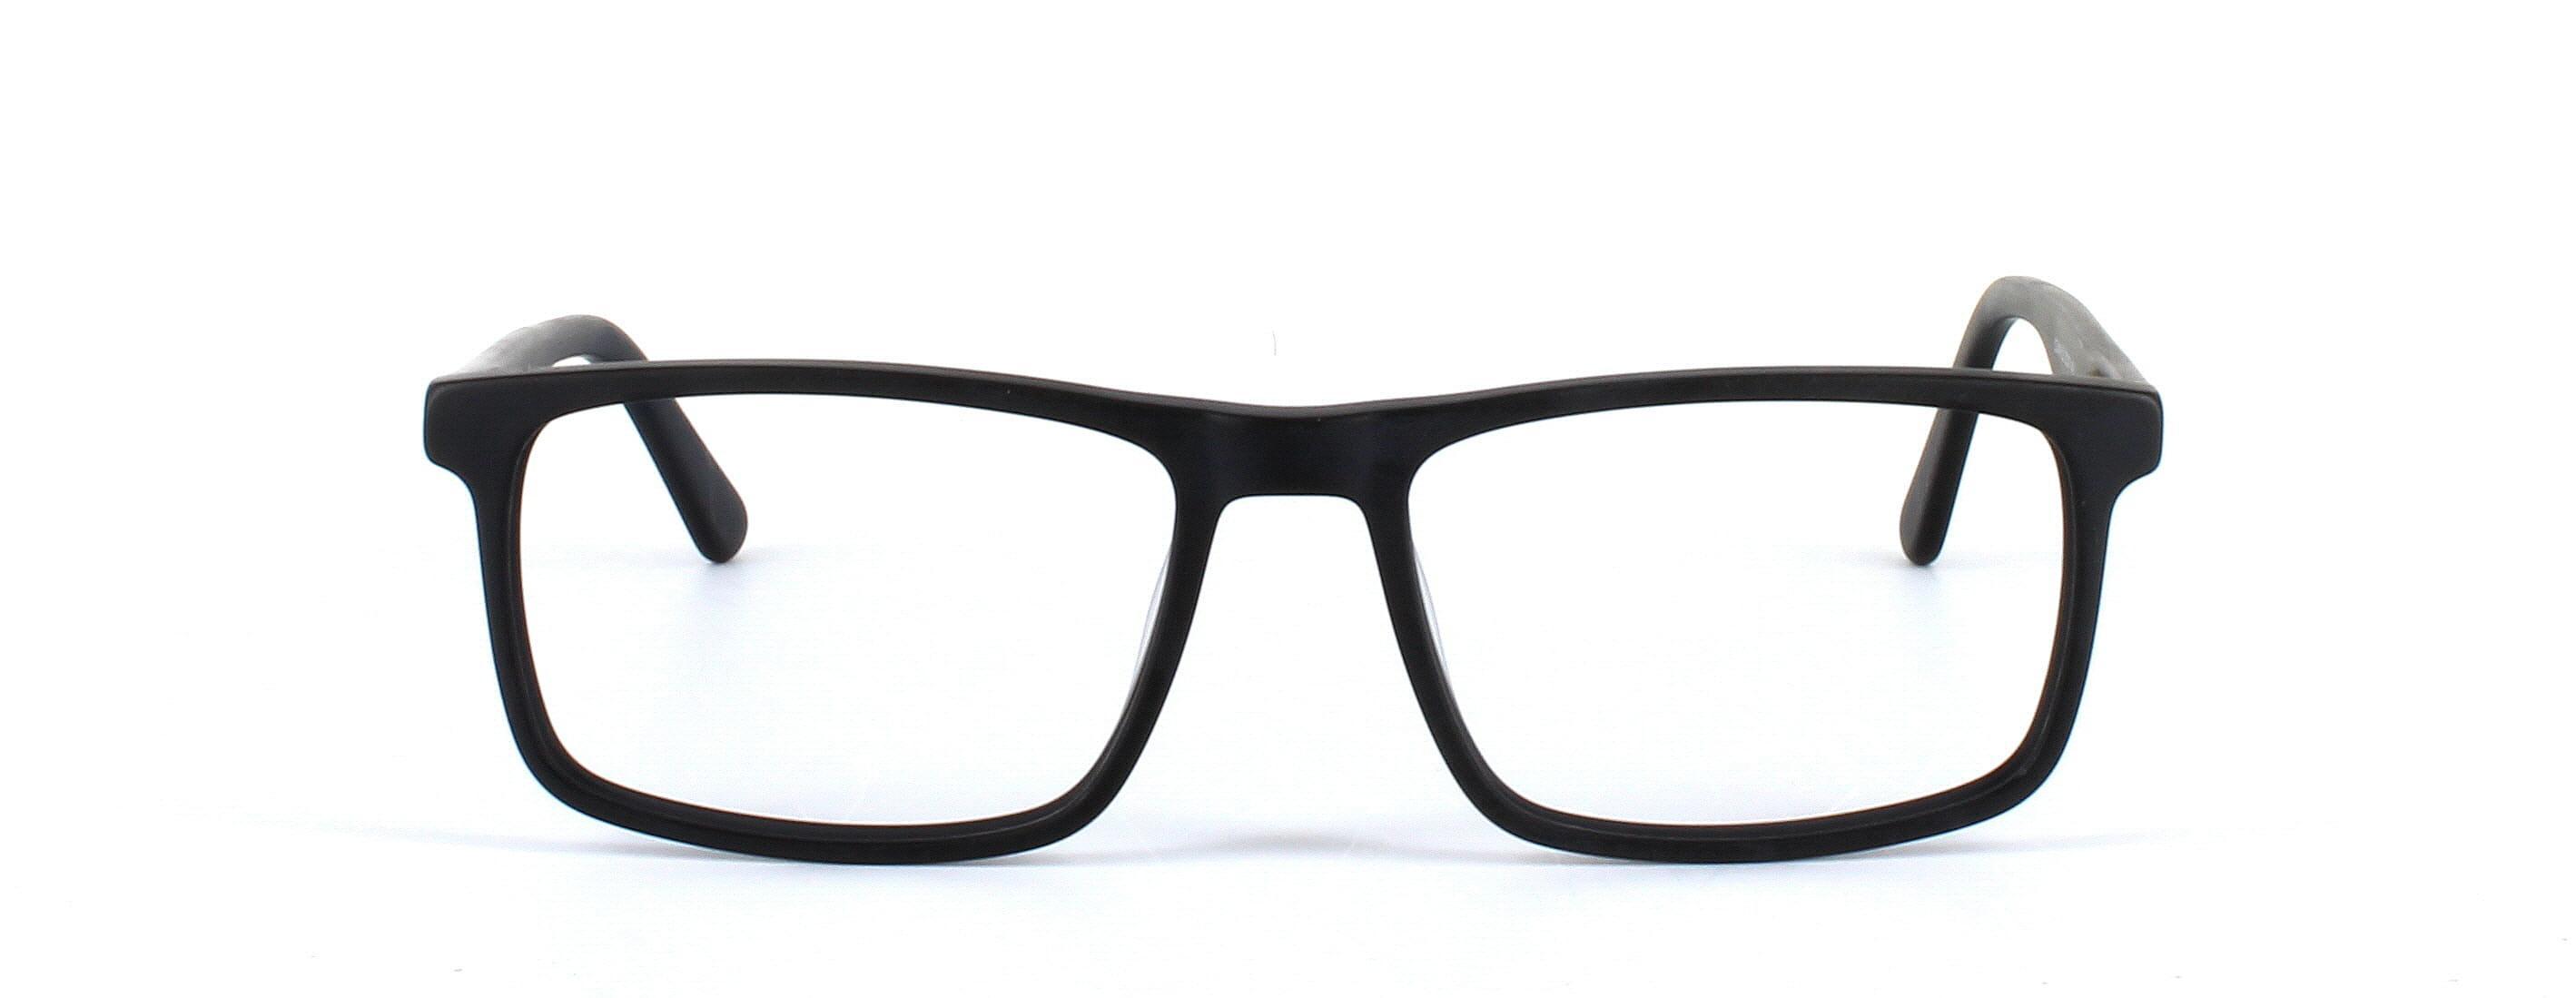 Livadia - unisex acetate glasses in matt black - image view 5